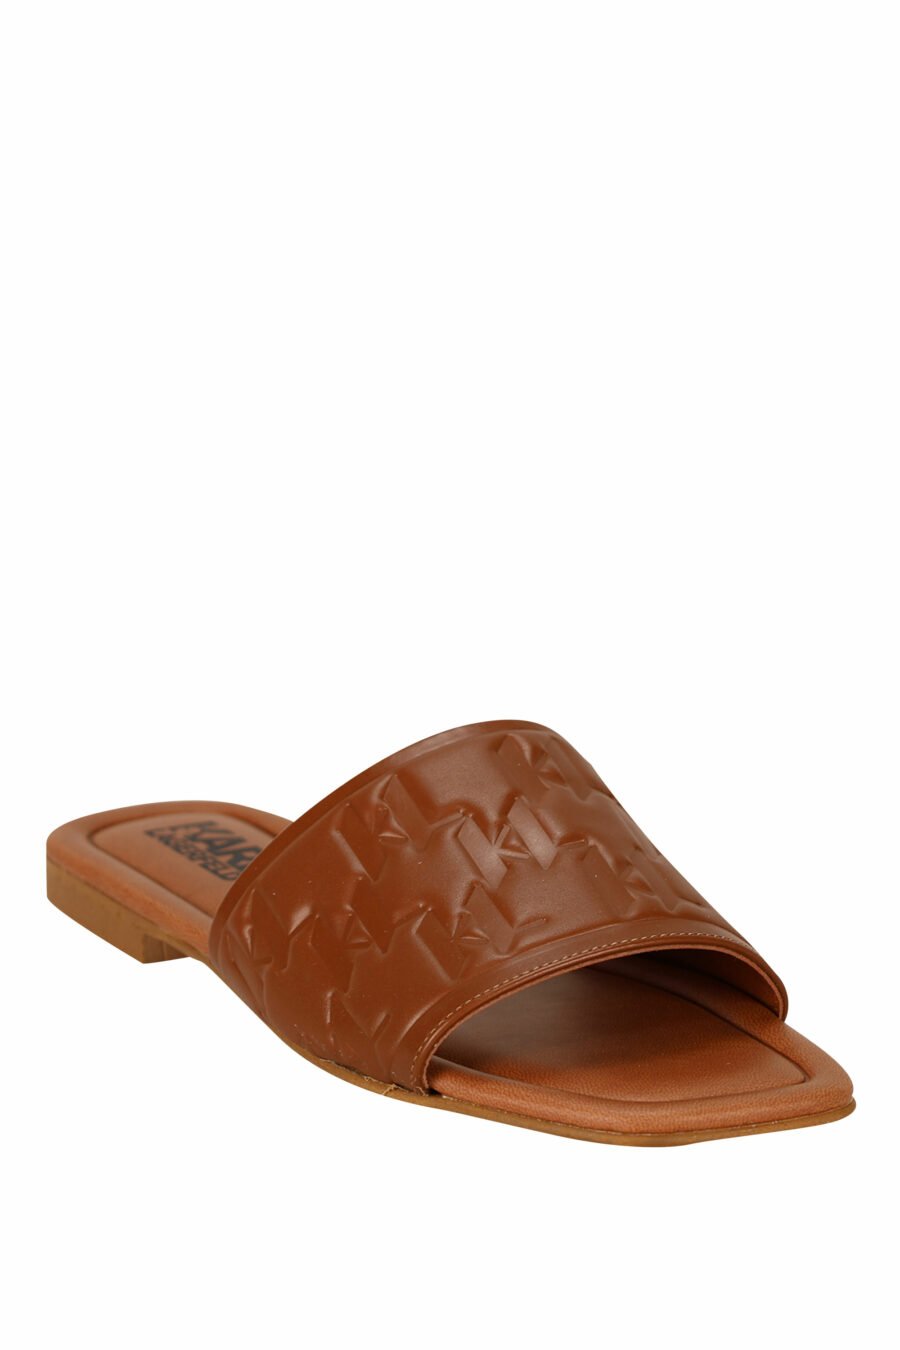 Sandales en cuir marron avec logo monogramme - 5059529404191 1